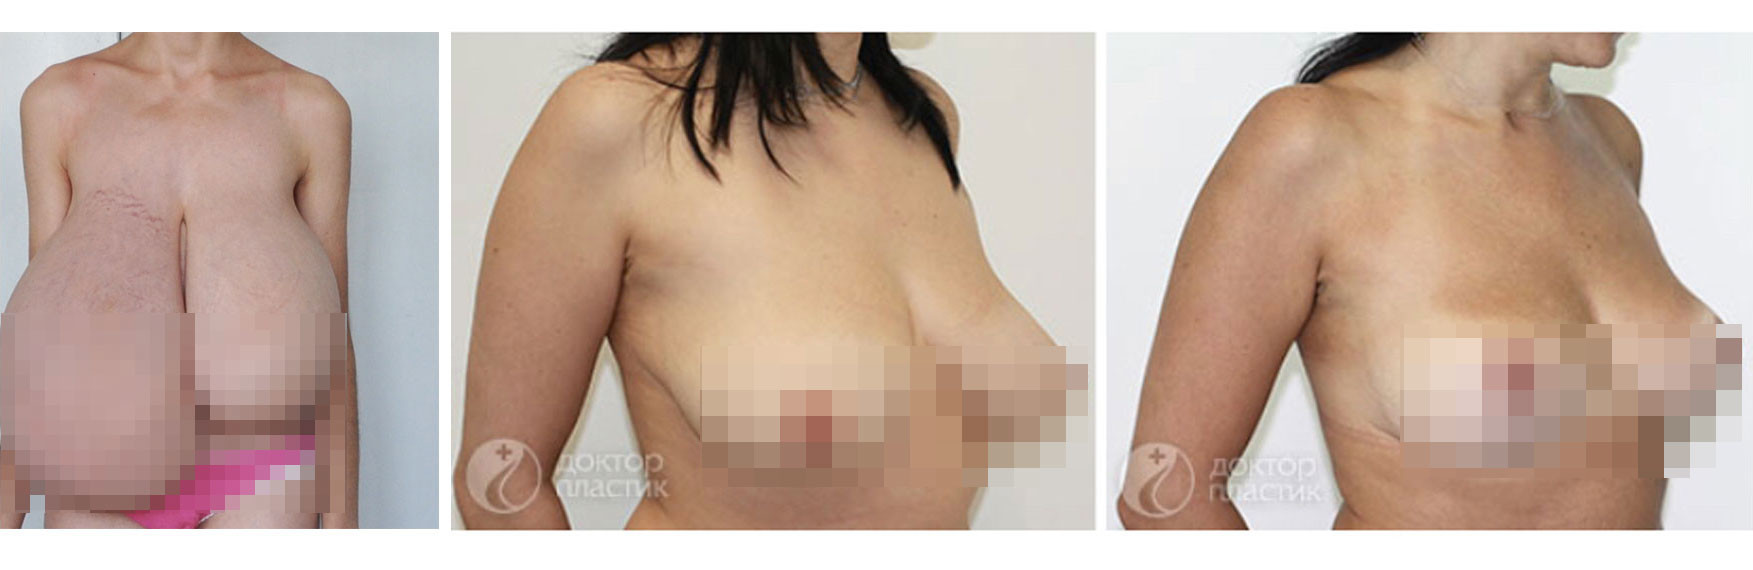 Фото до и после операции. Фото предоставлены пластическим хирургом Дмитрием Труфановым